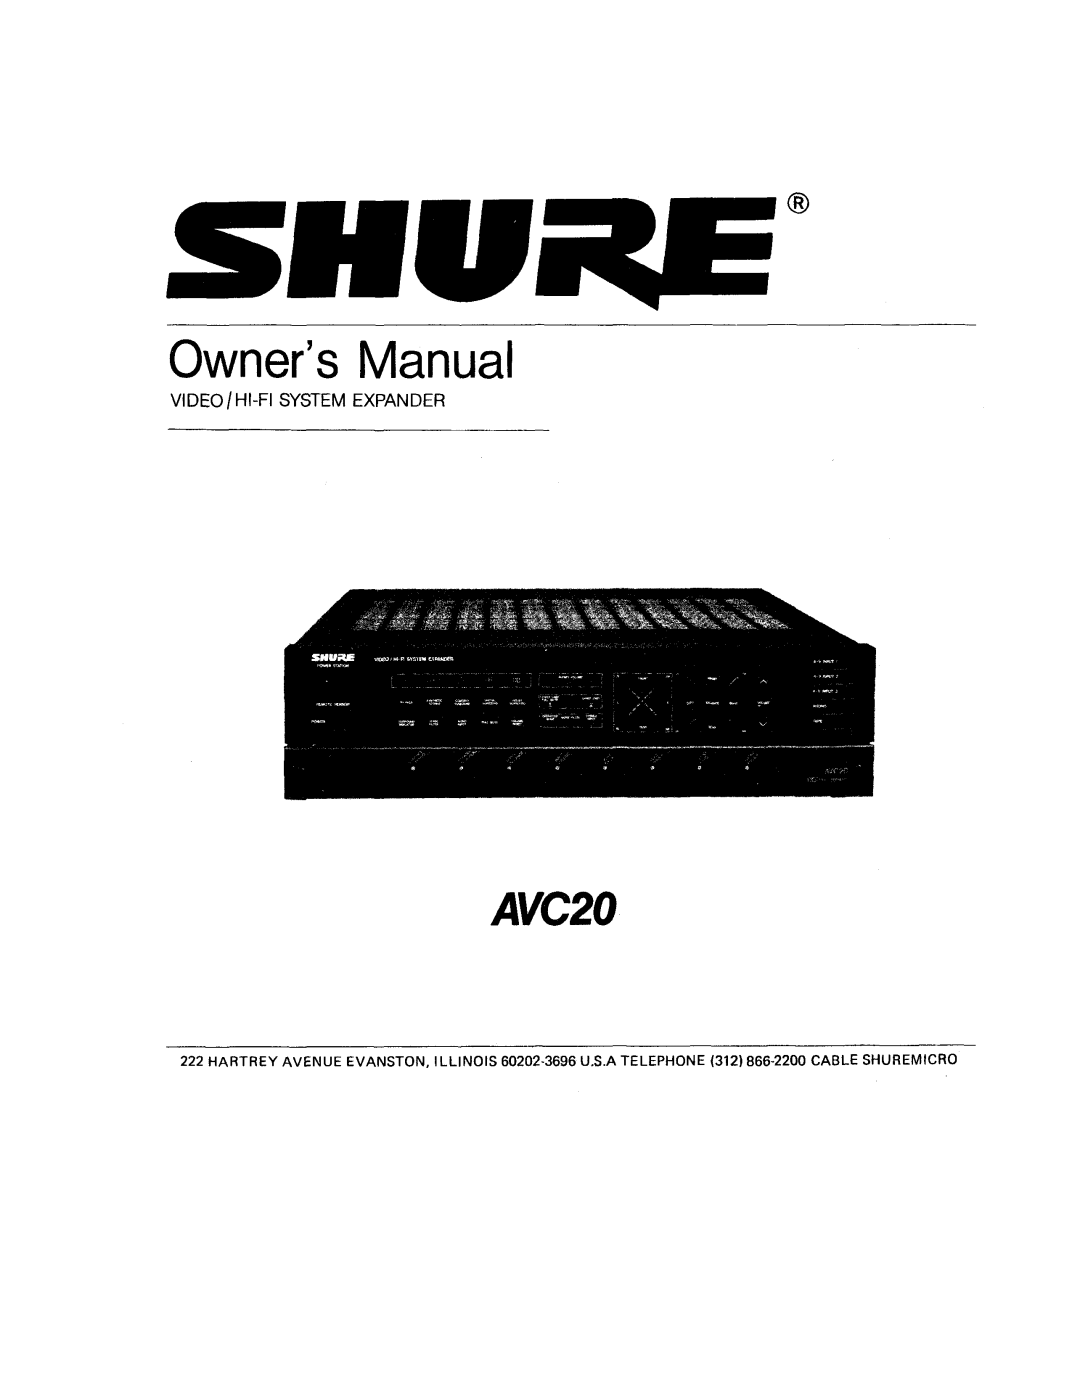 Shure AVC20 owner manual OwnersManual, Video / Hi-Fisystem Expander 